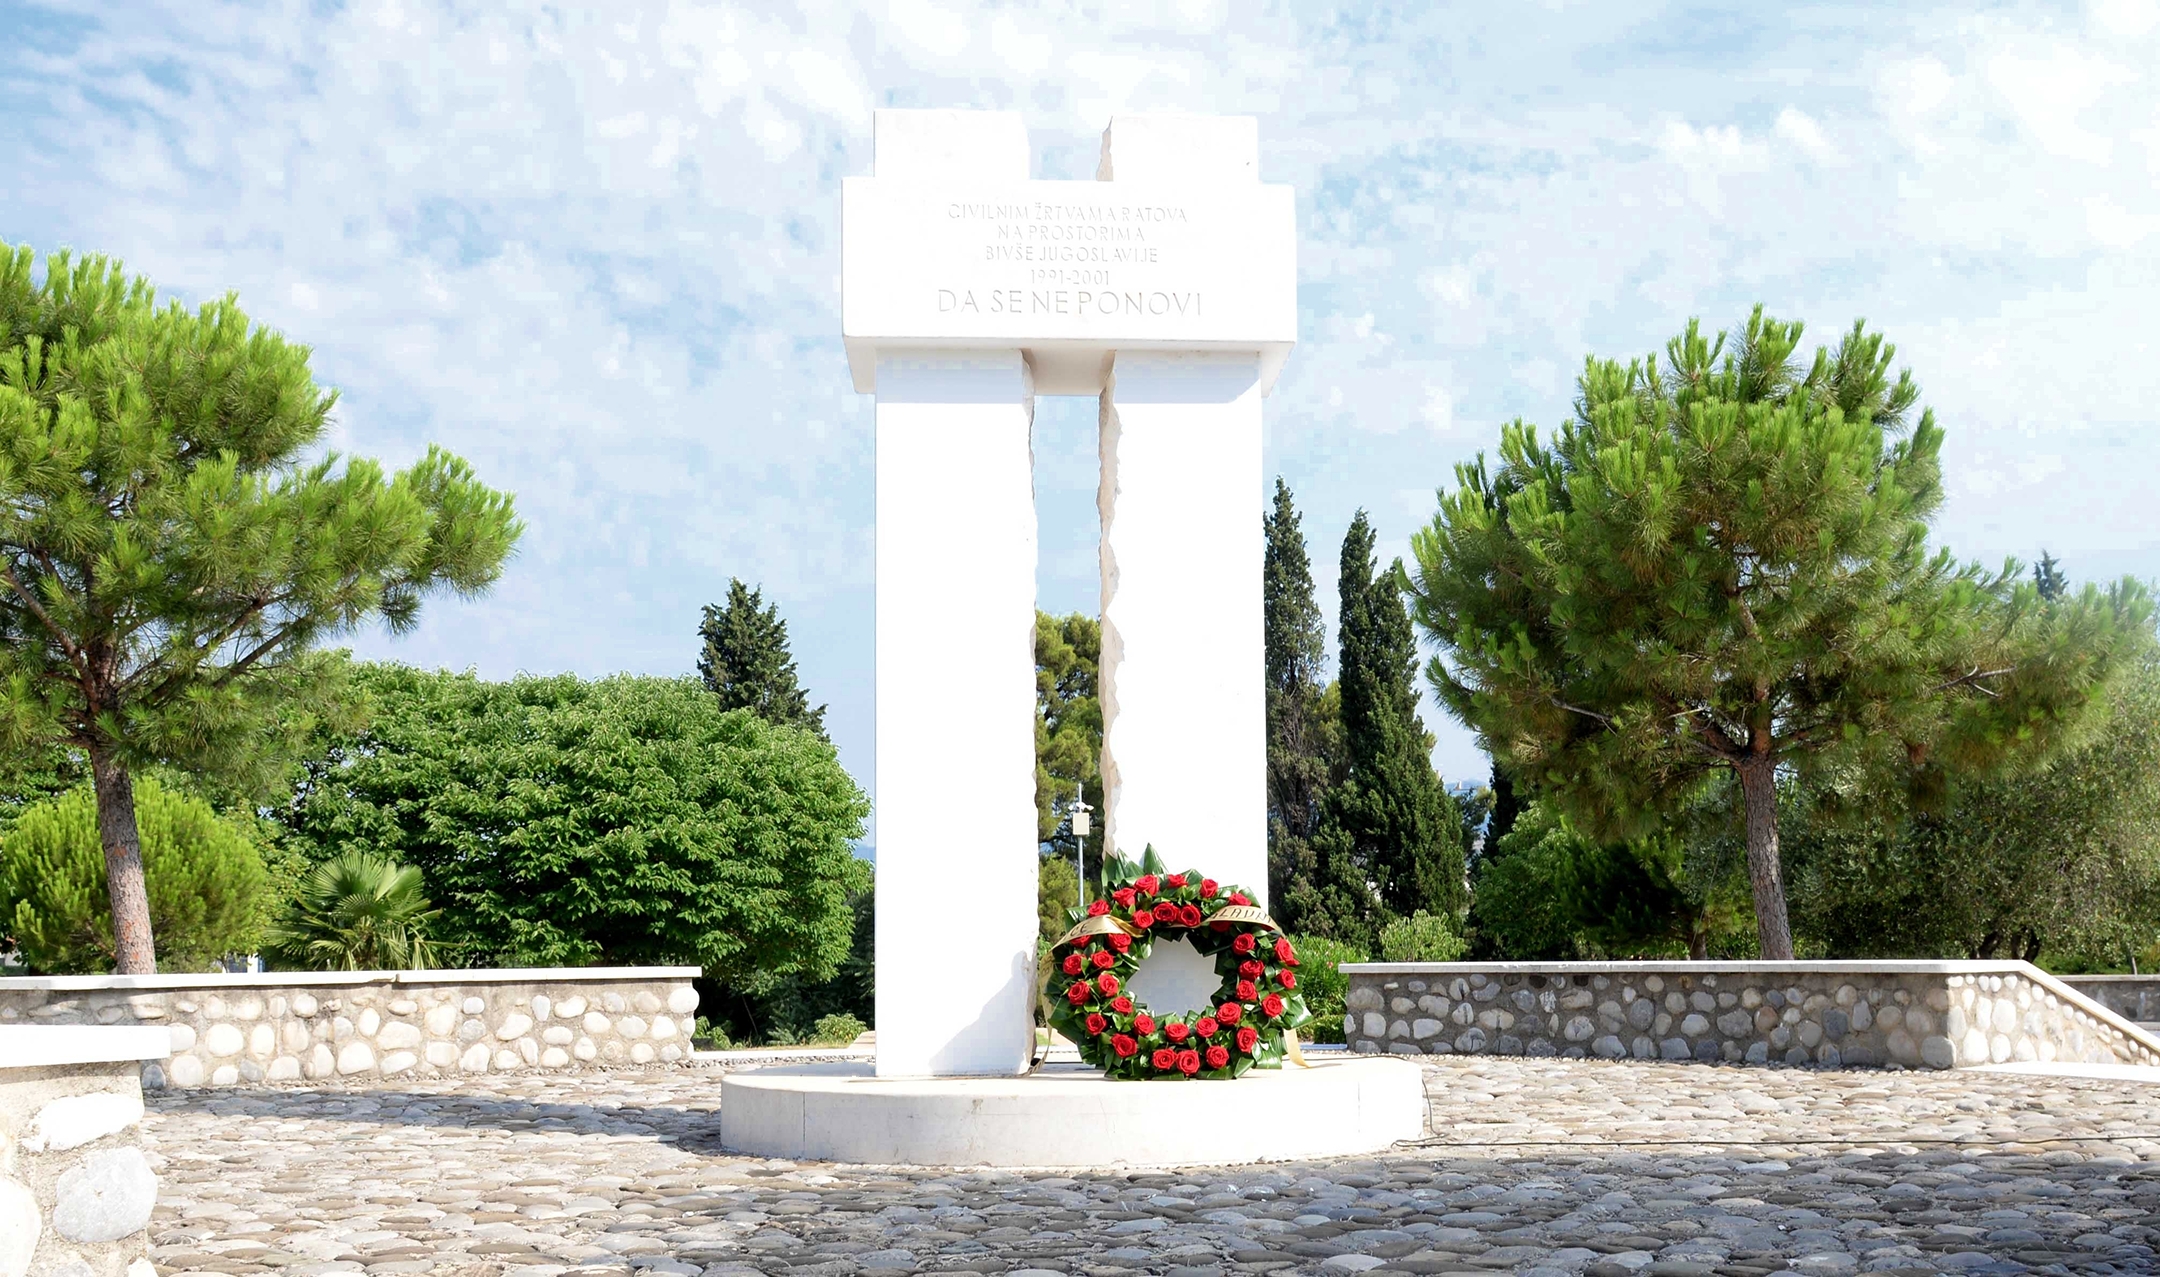 Delegacija Glavnog grada položila vijenac na spomenik posvećen civilnim žrtvama ratova u bivšoj Jugoslaviji